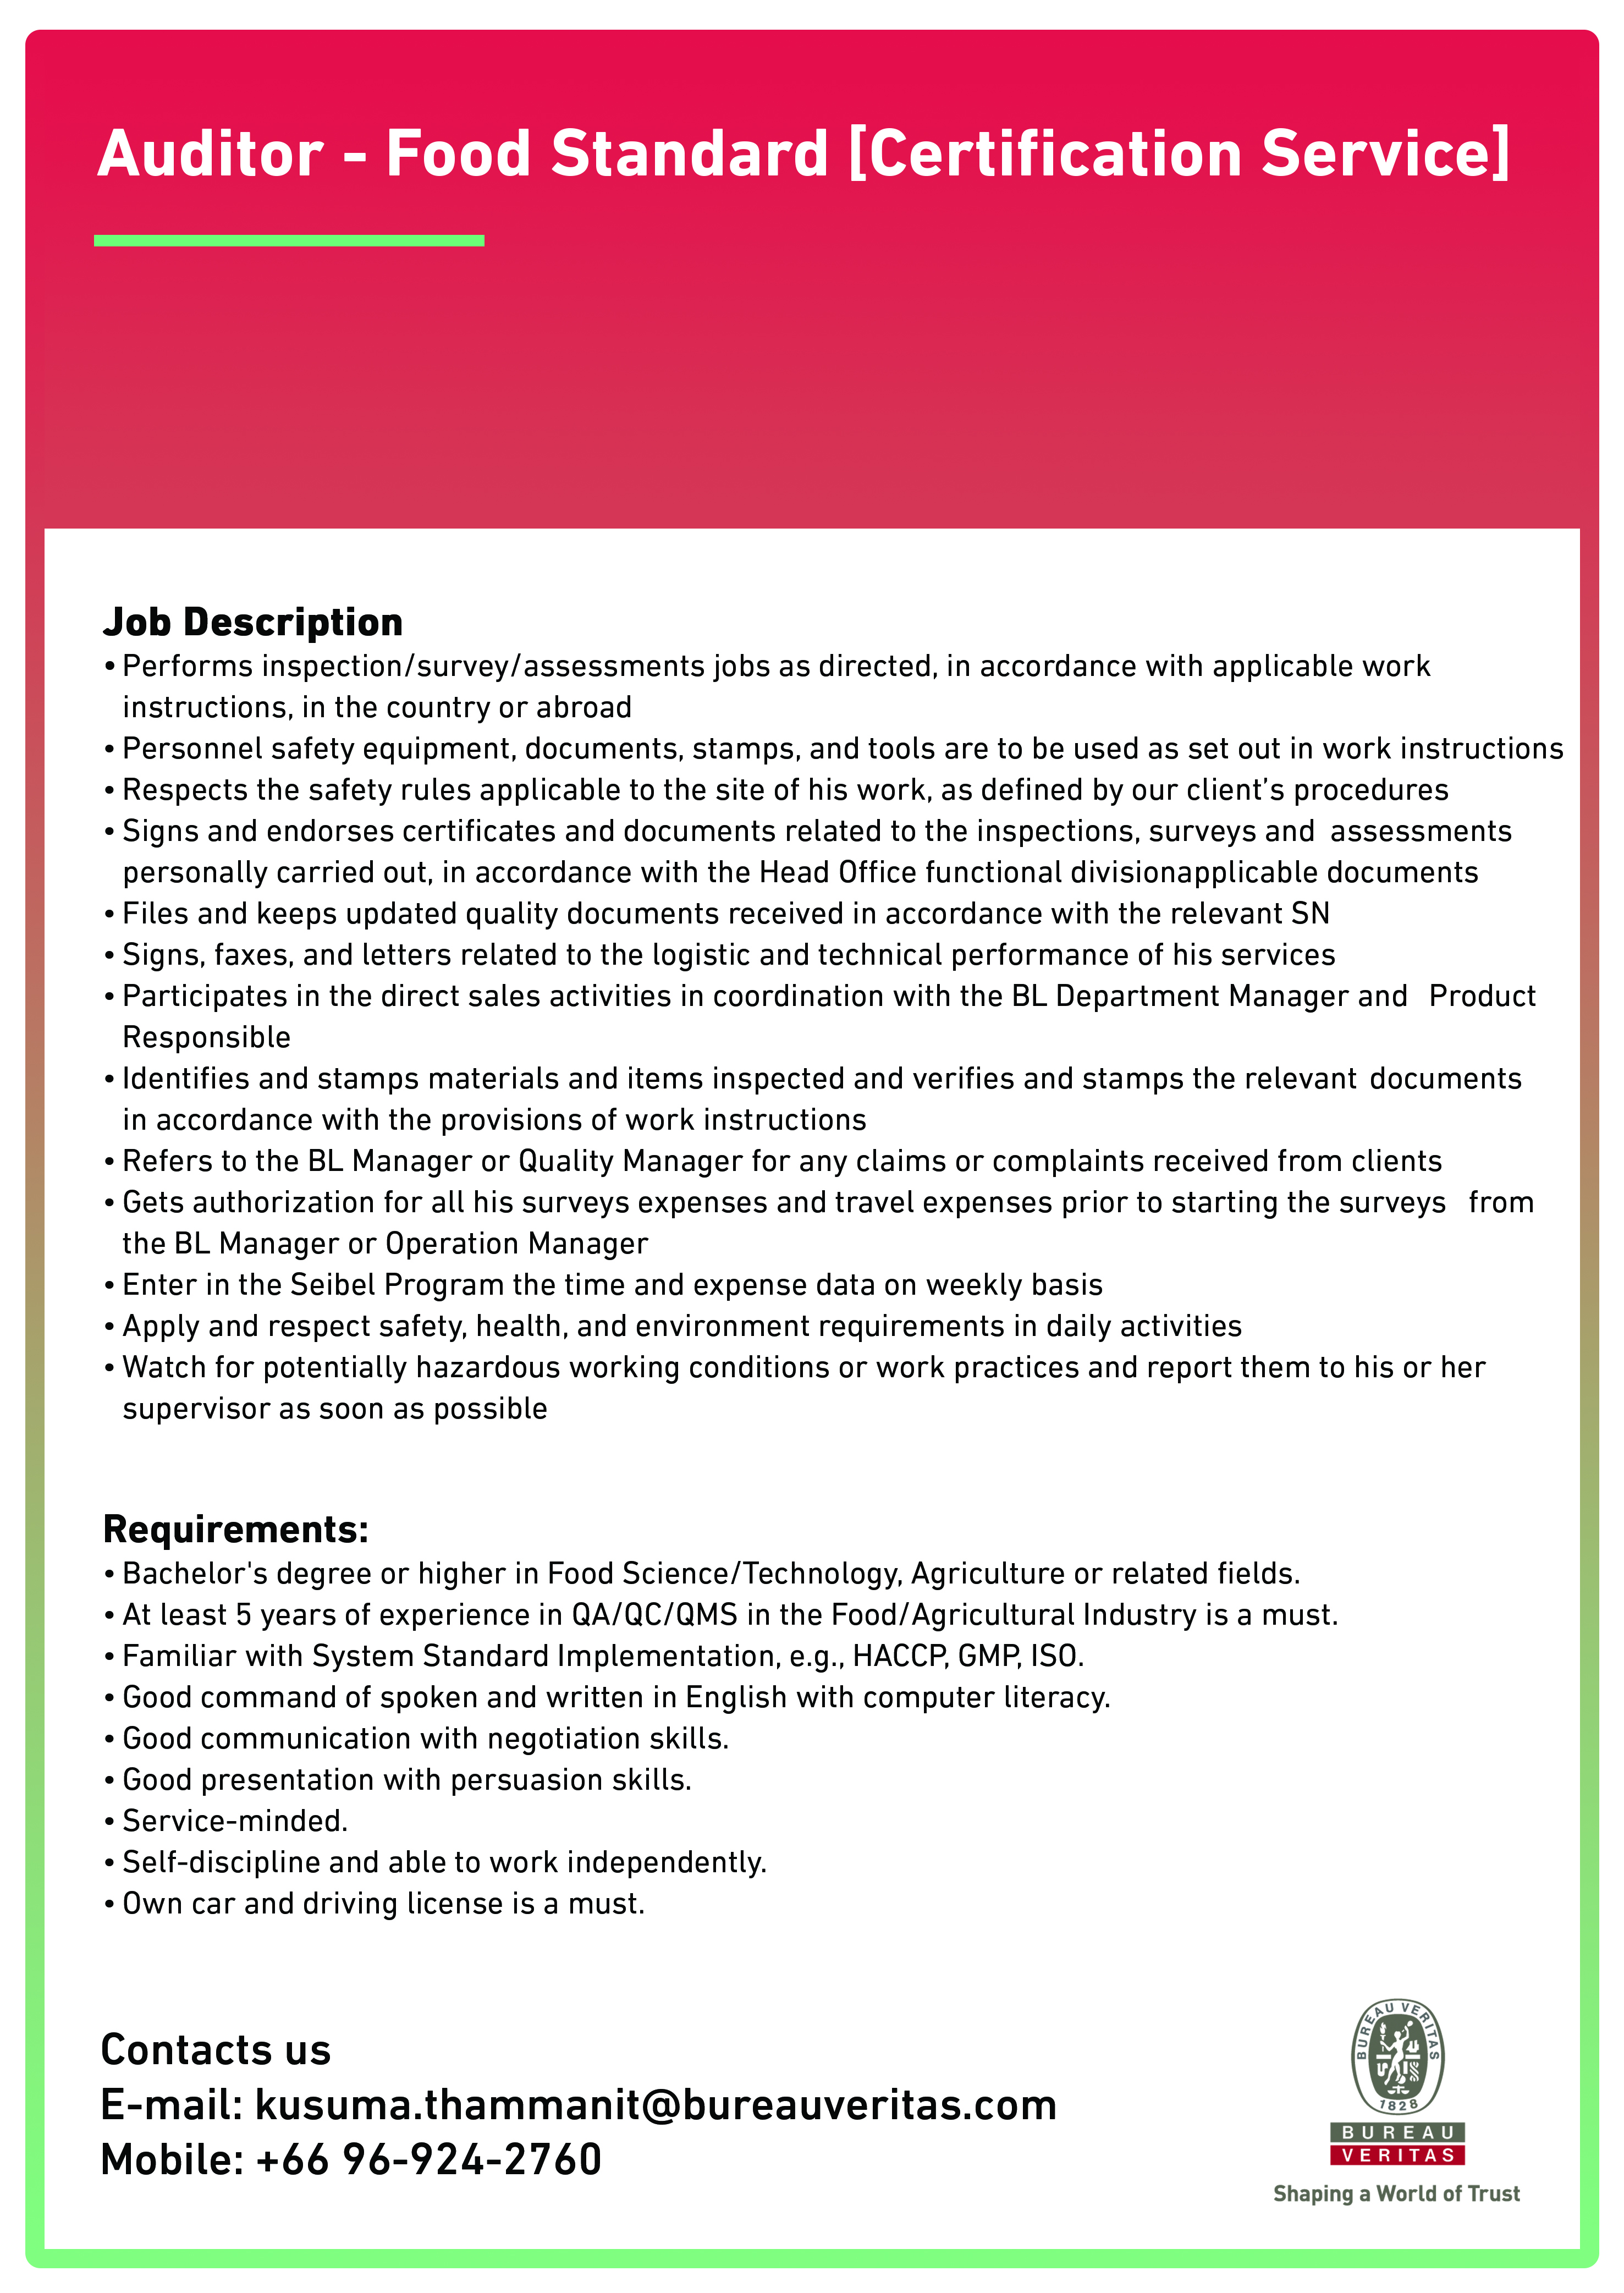 BV job offer - Auditor - Food Standard [Certification Service]